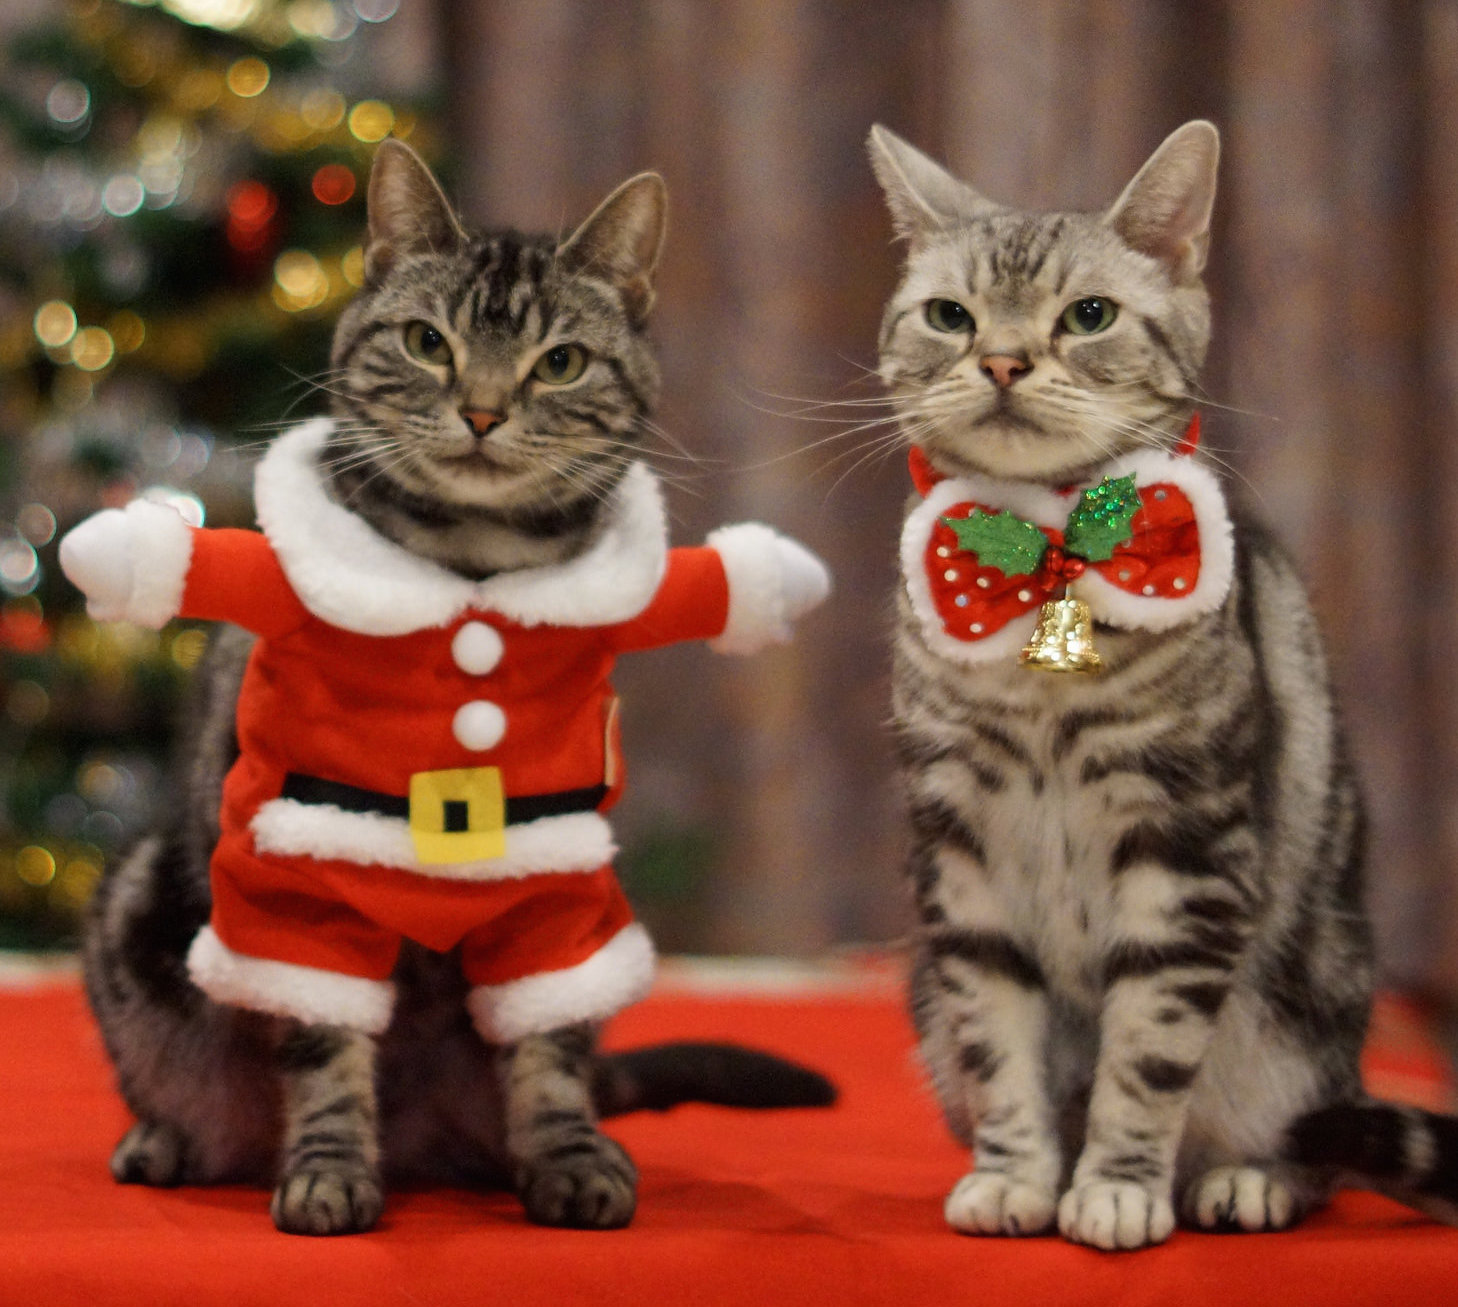 Cats at Christmas